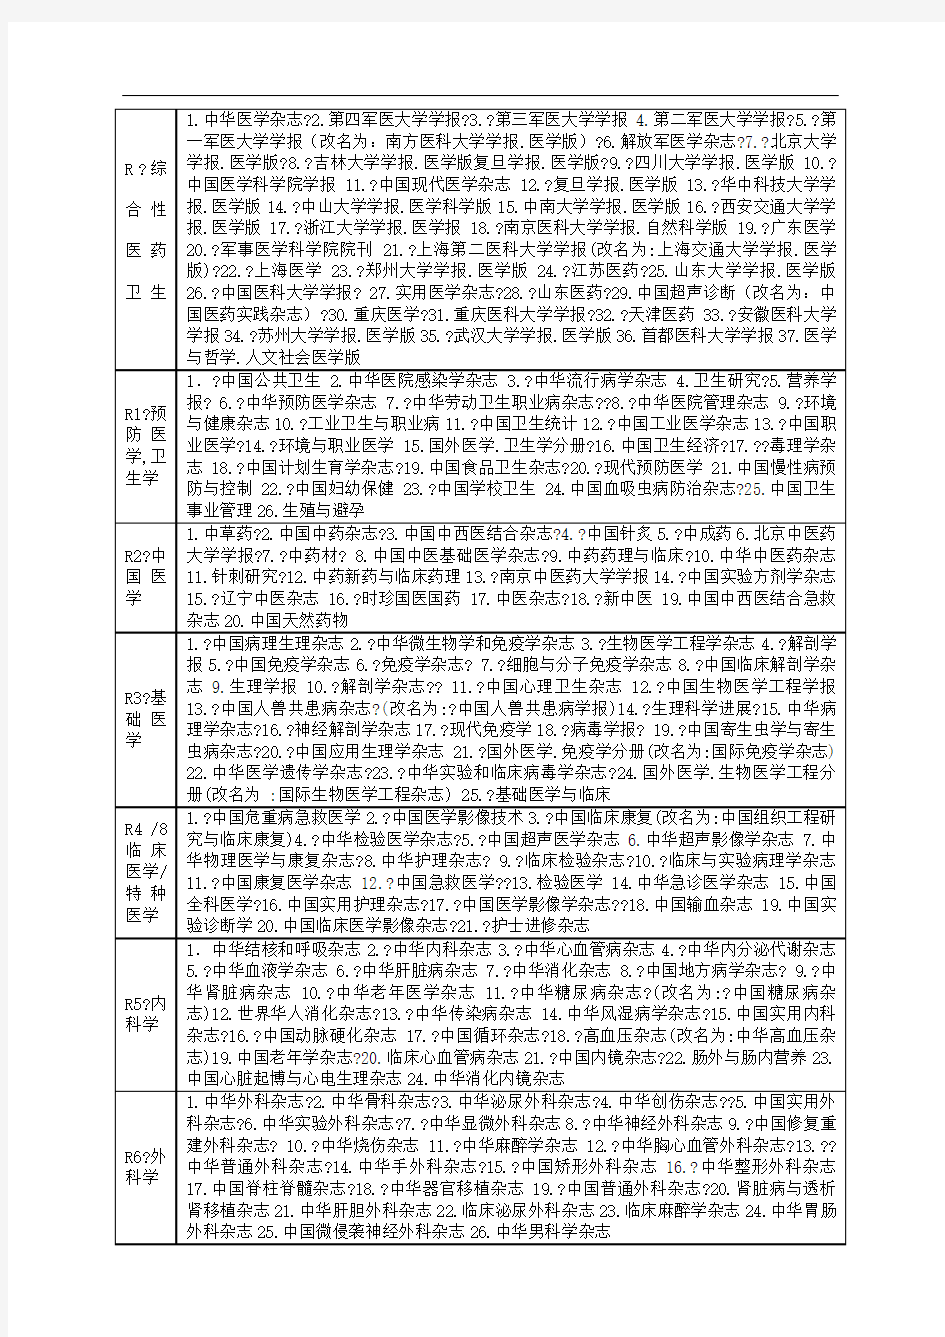 北大中文核心期刊医学目录完整版